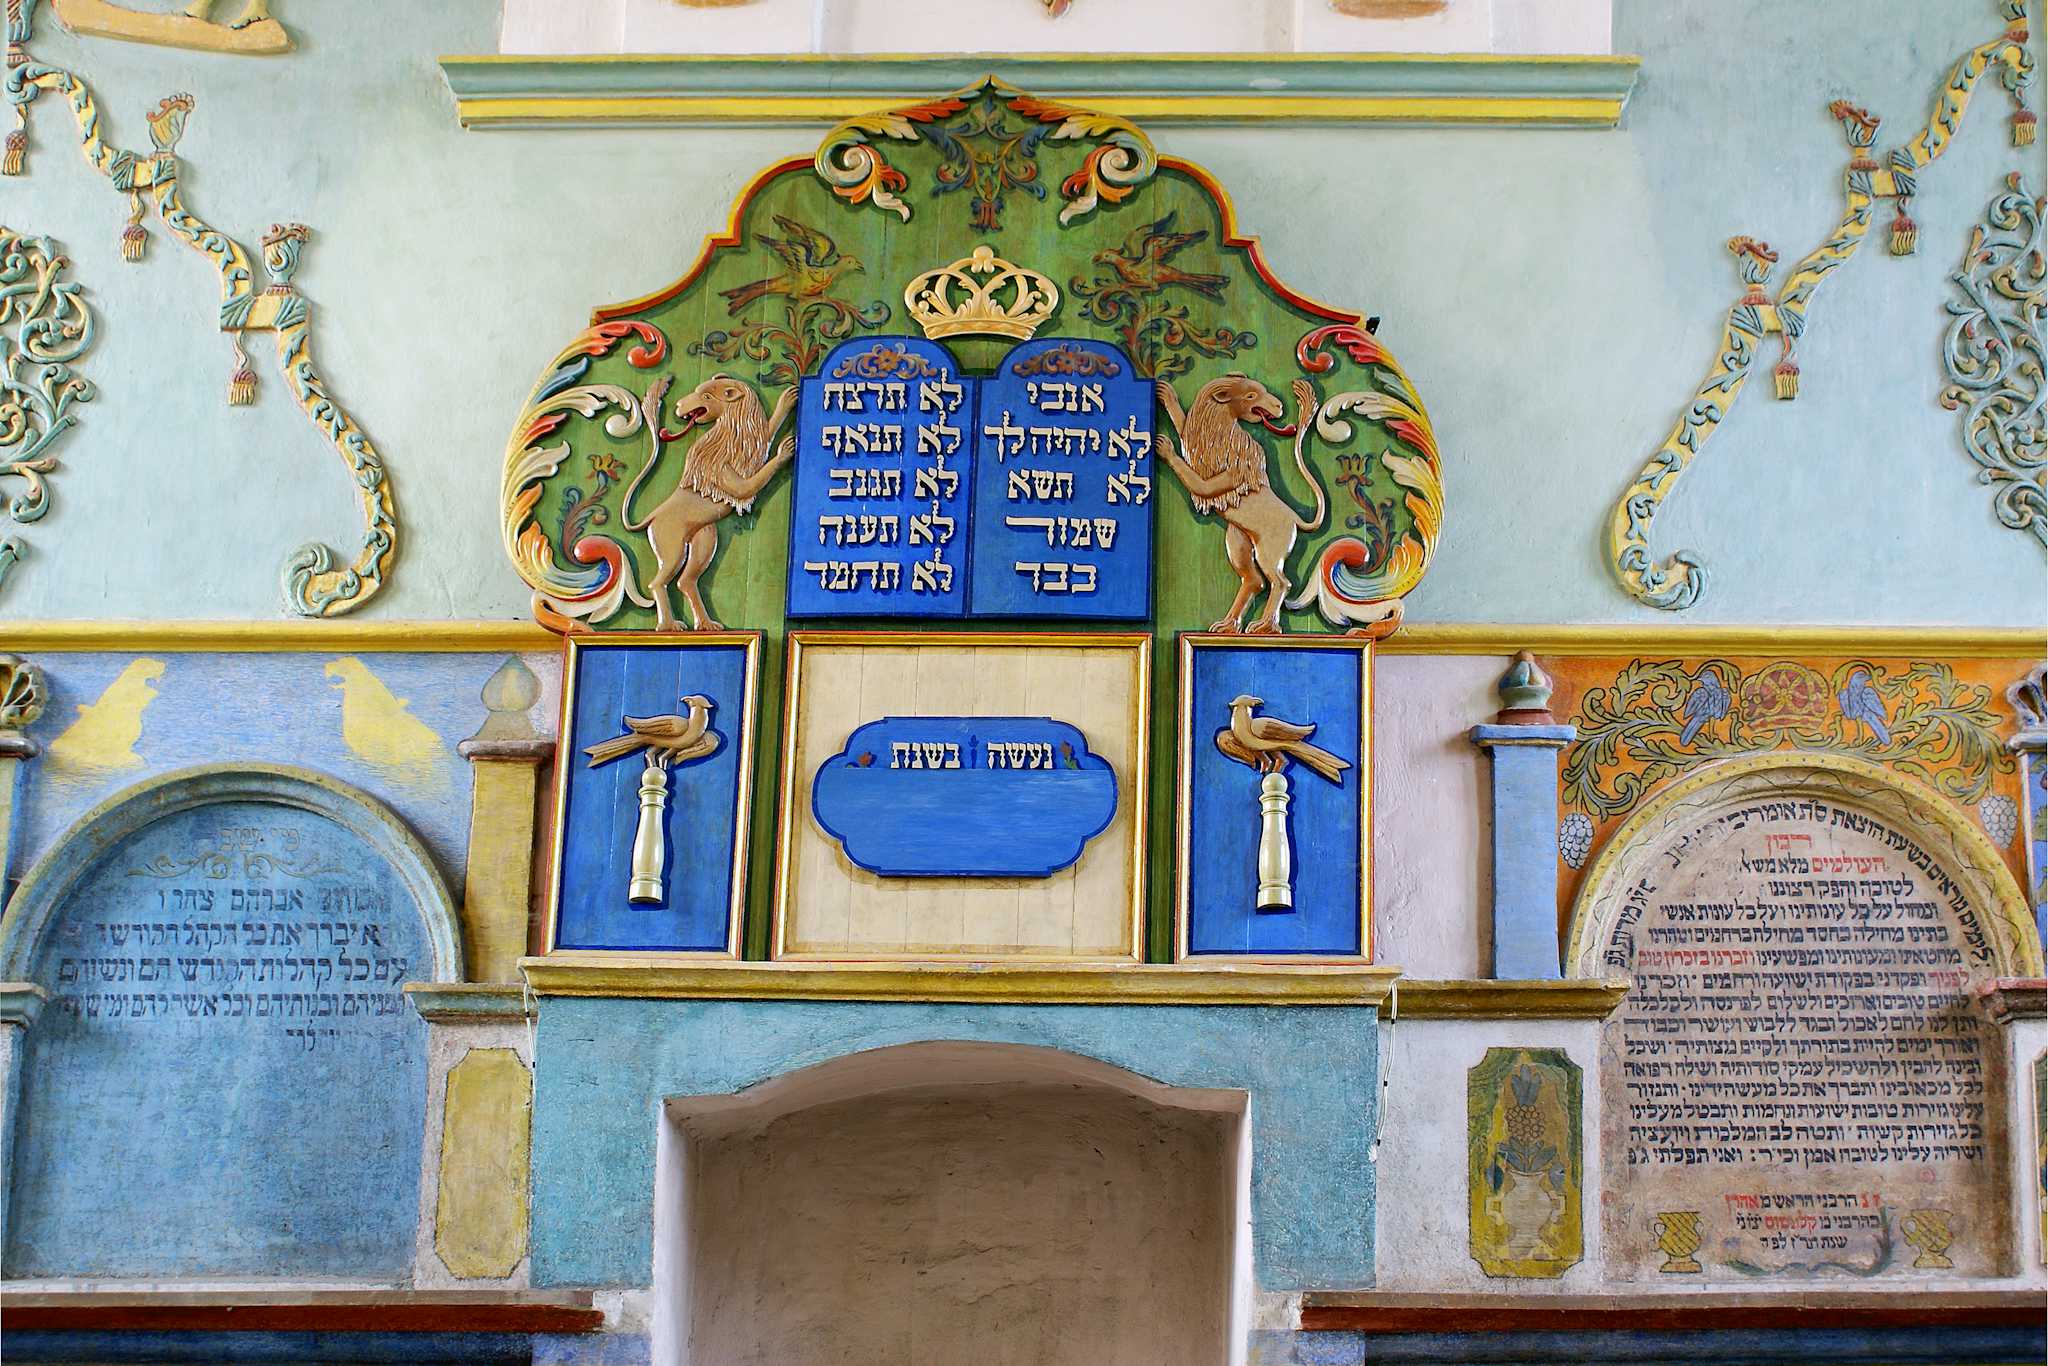 The Lancut Synagogue